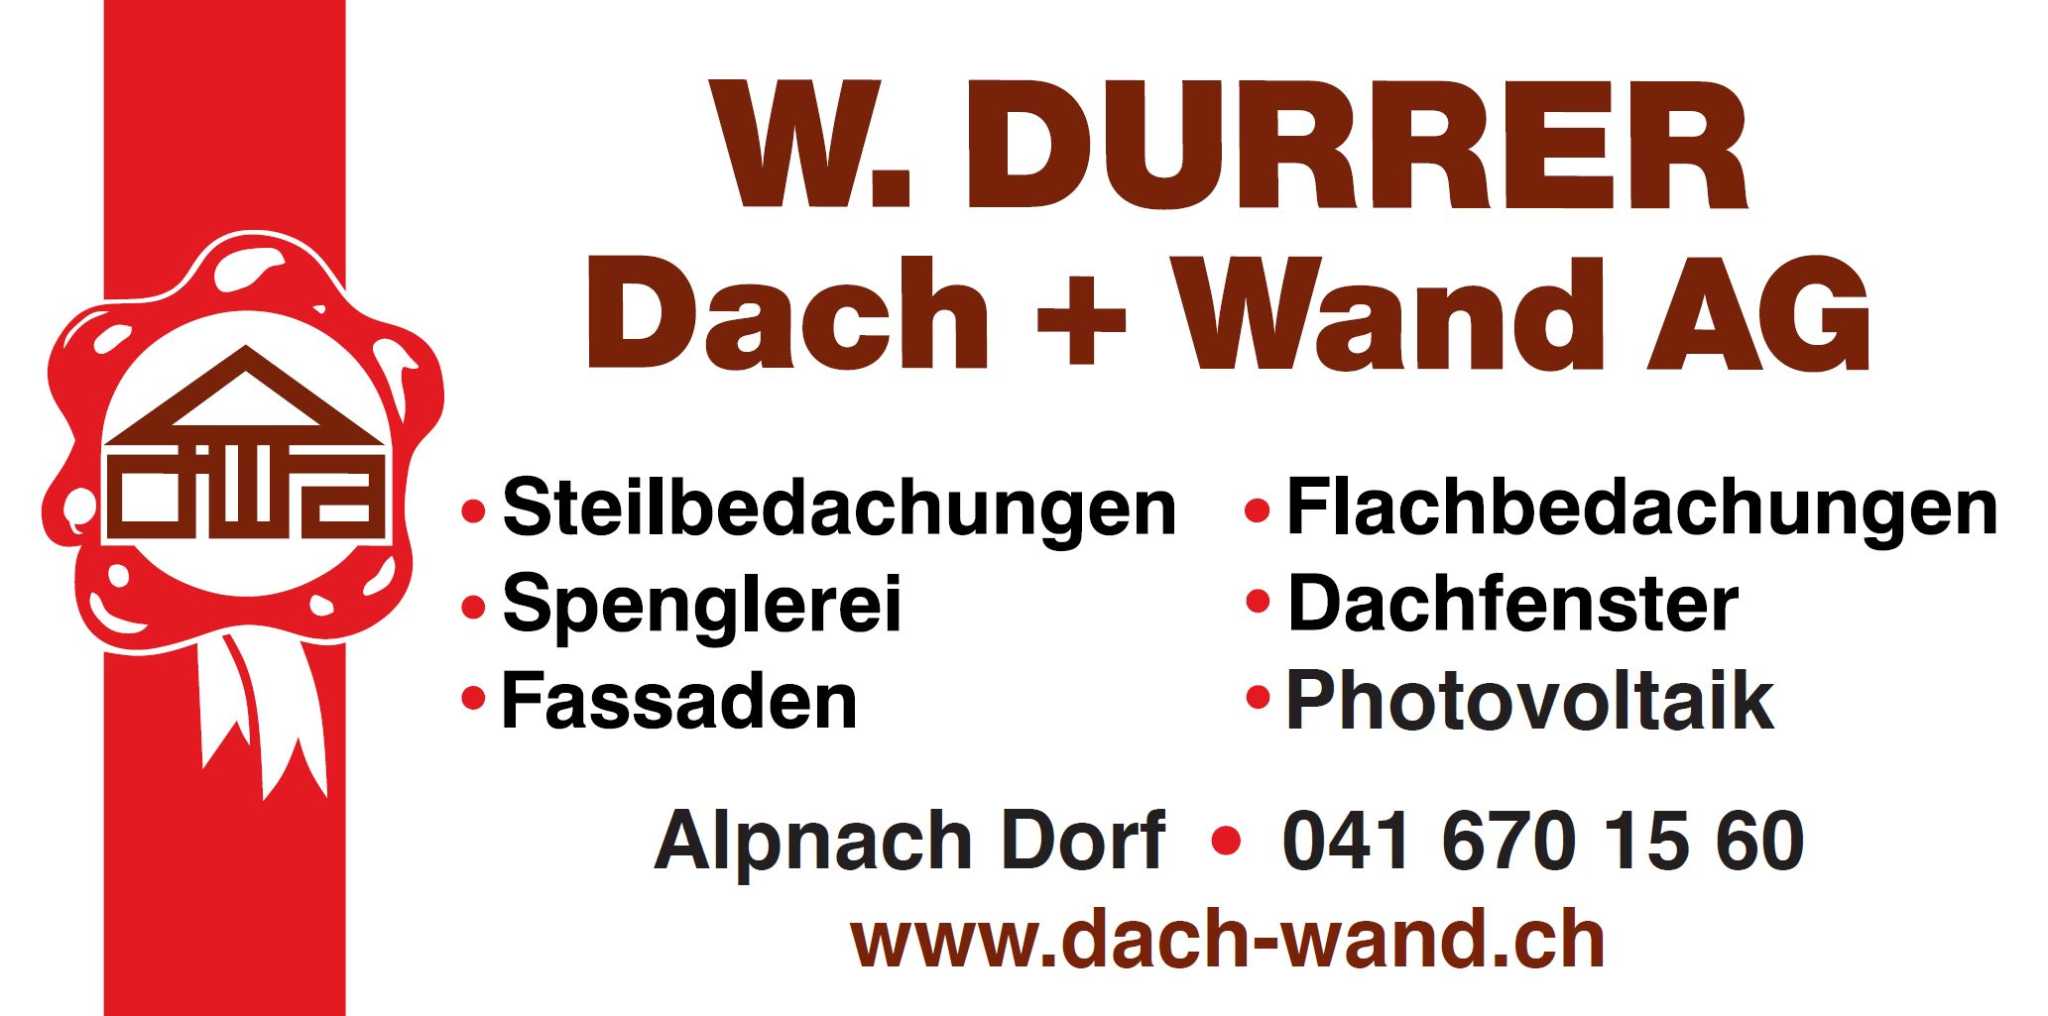 W. Durrer Dach und Wand AG